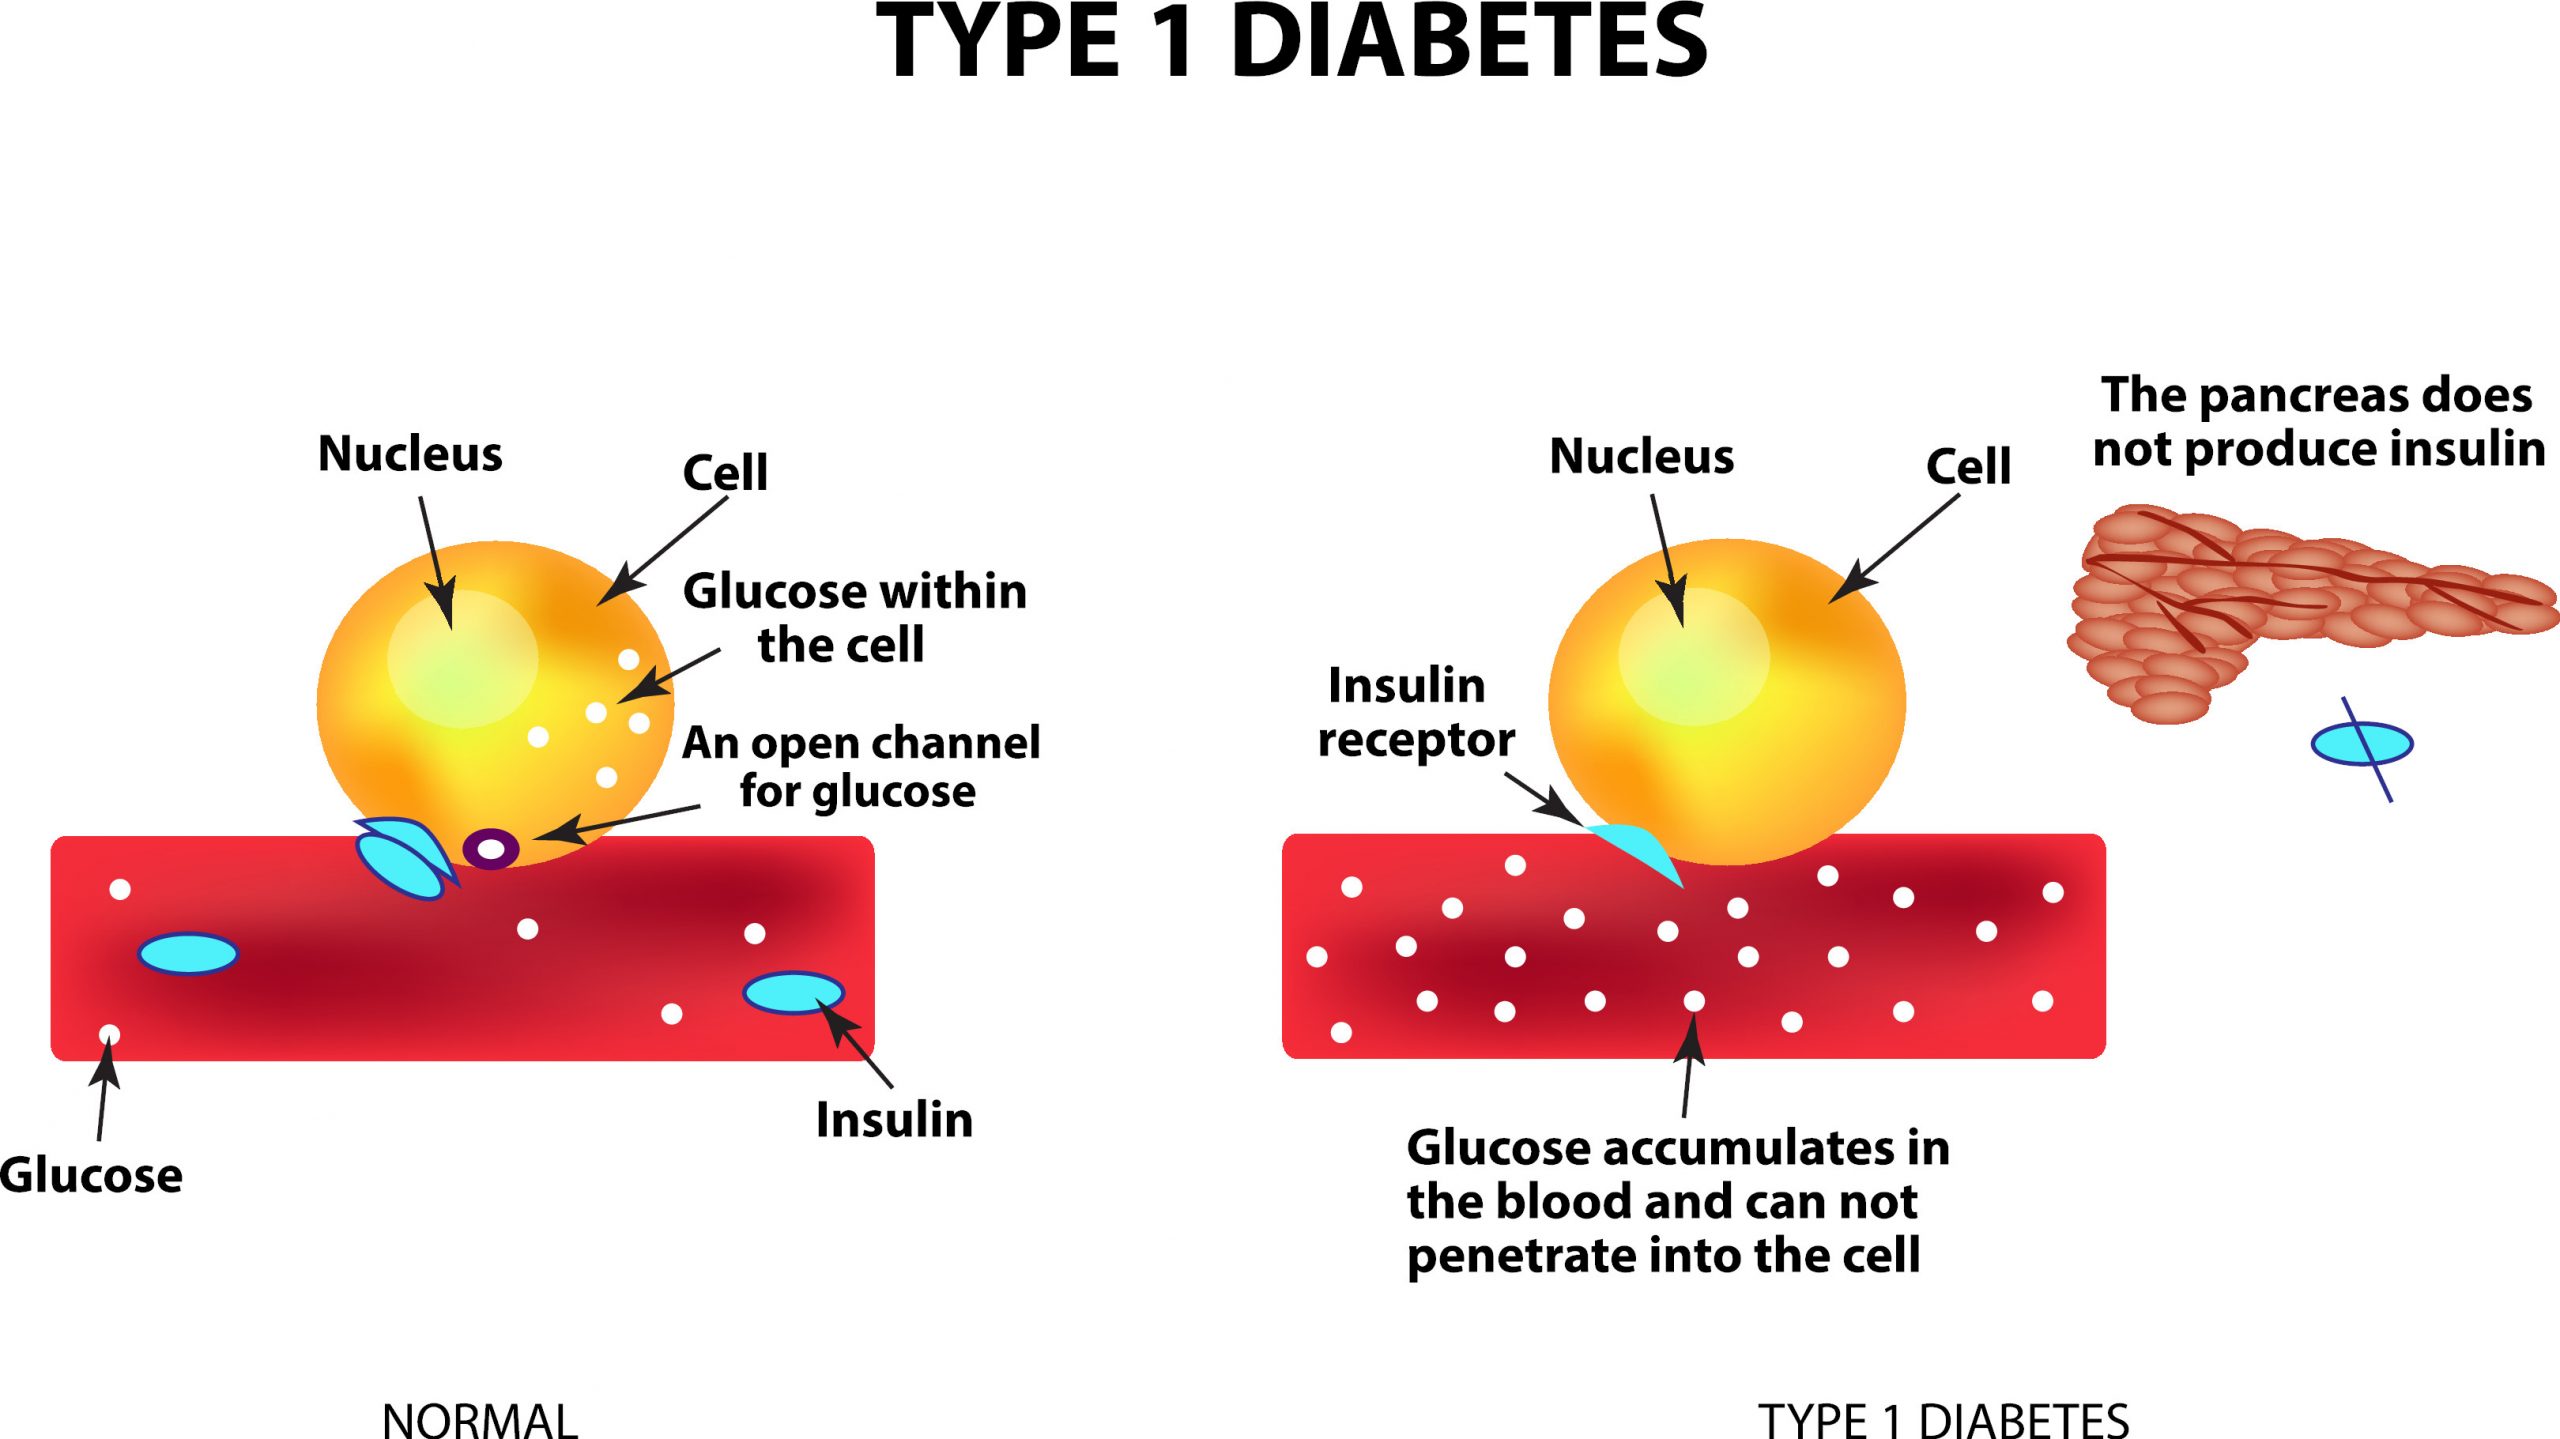 Ved diabetes type 1 fører nedsatt insulinsproduksjon til økt blodsukker, noe som kan påvirkes av kostholdet.